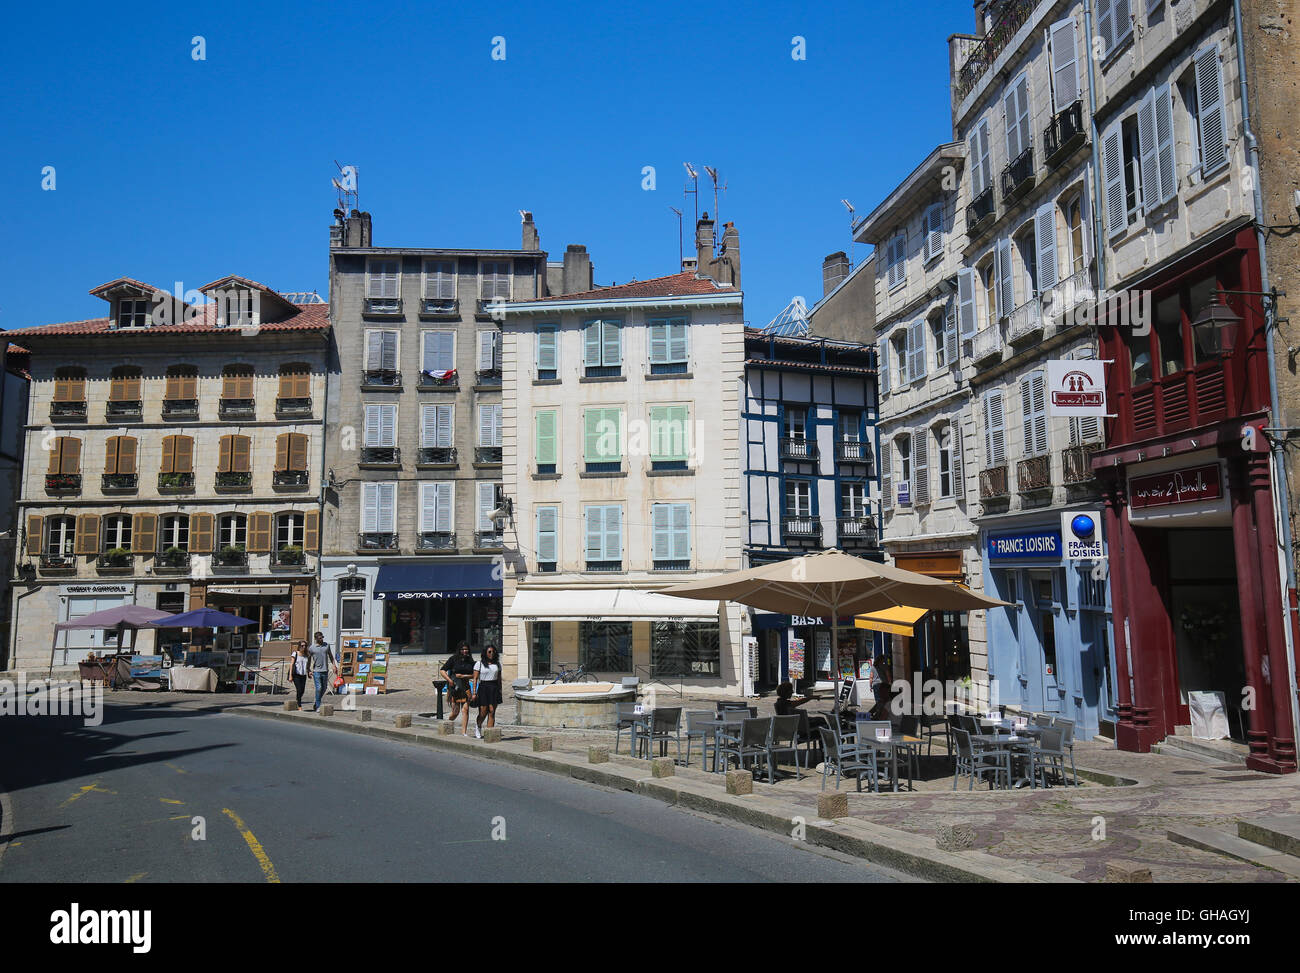 BAYONNE, Frankreich - 9. Juli 2016: Alte Häuser im Zentrum von Bayonne, einer Stadt in der Region Aquitaine Südwest-Frankreich. Stockfoto